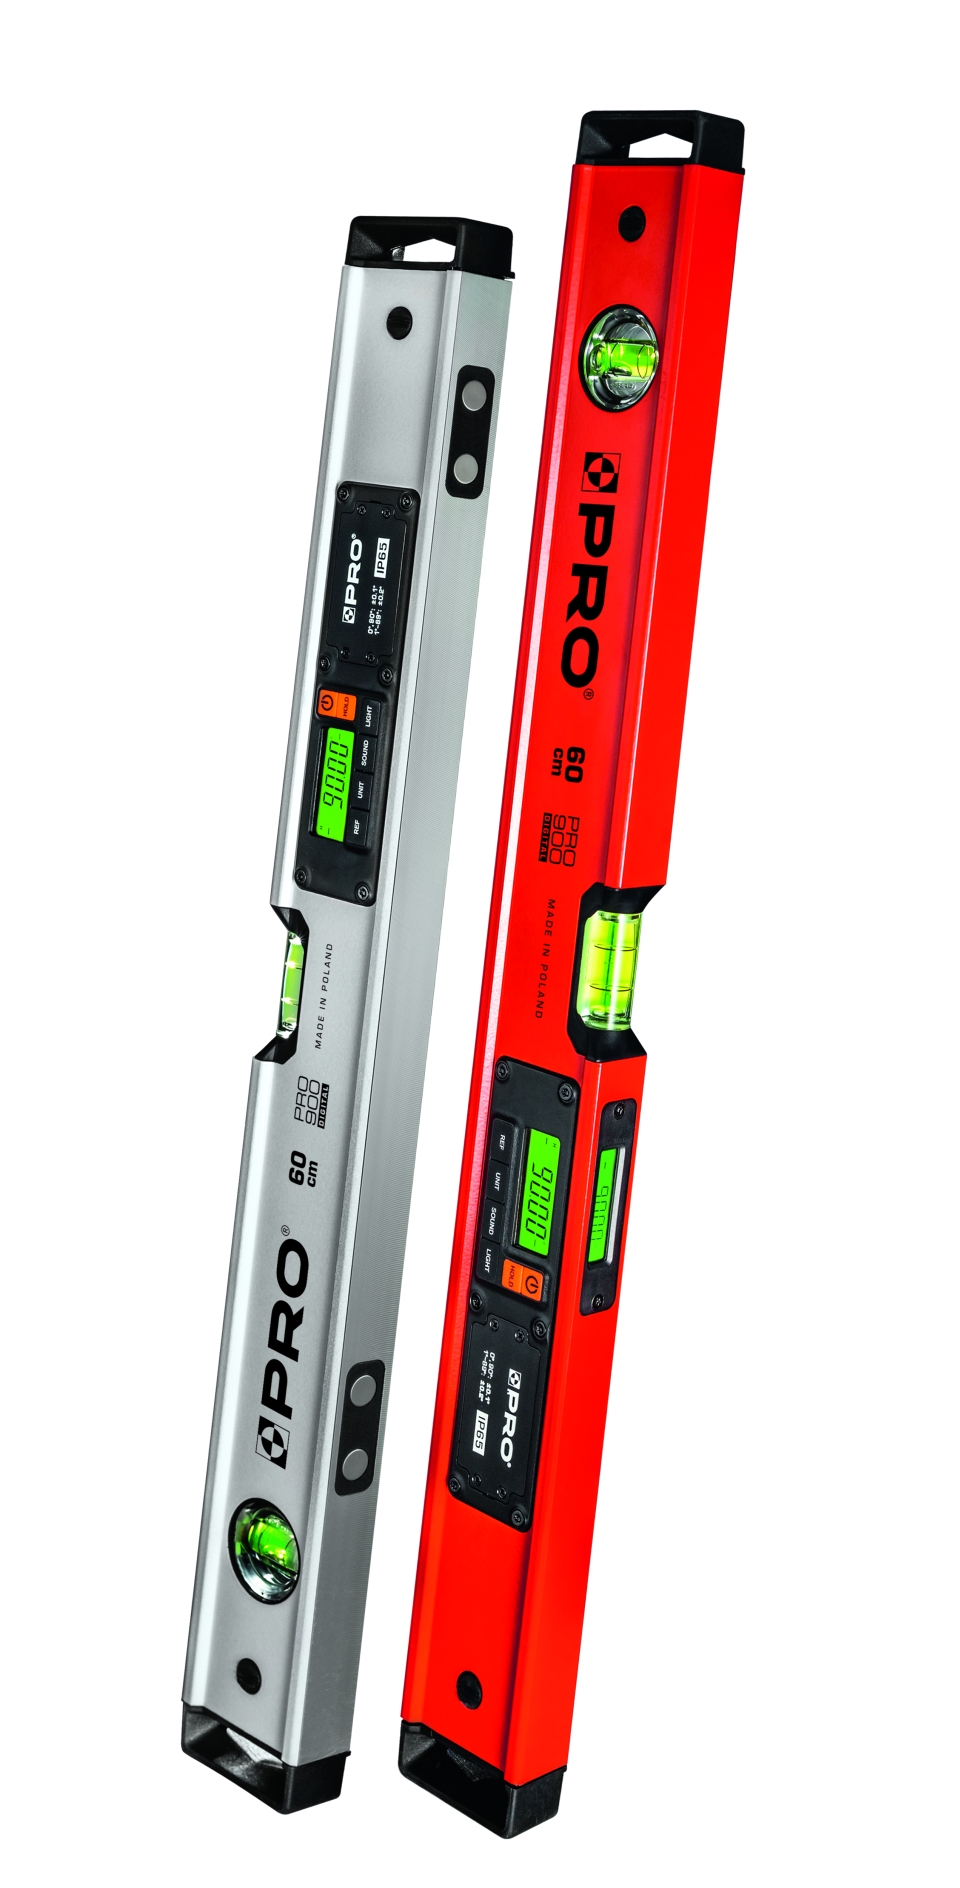 PRO900 Digital występuje w dwóch wersjach - poziomnicy z magnesami i bez nich.